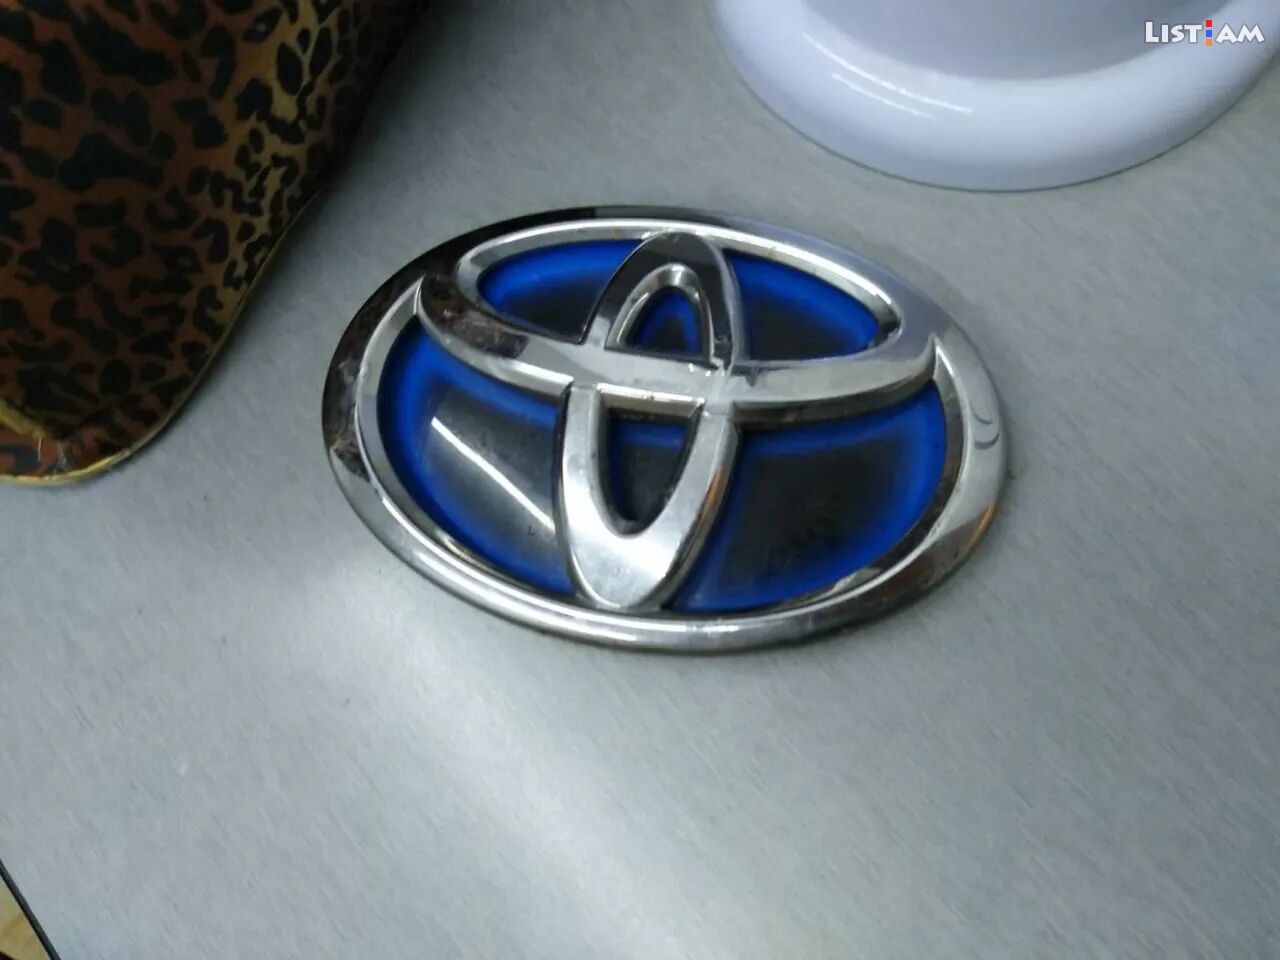 Toyota Camry hybrid